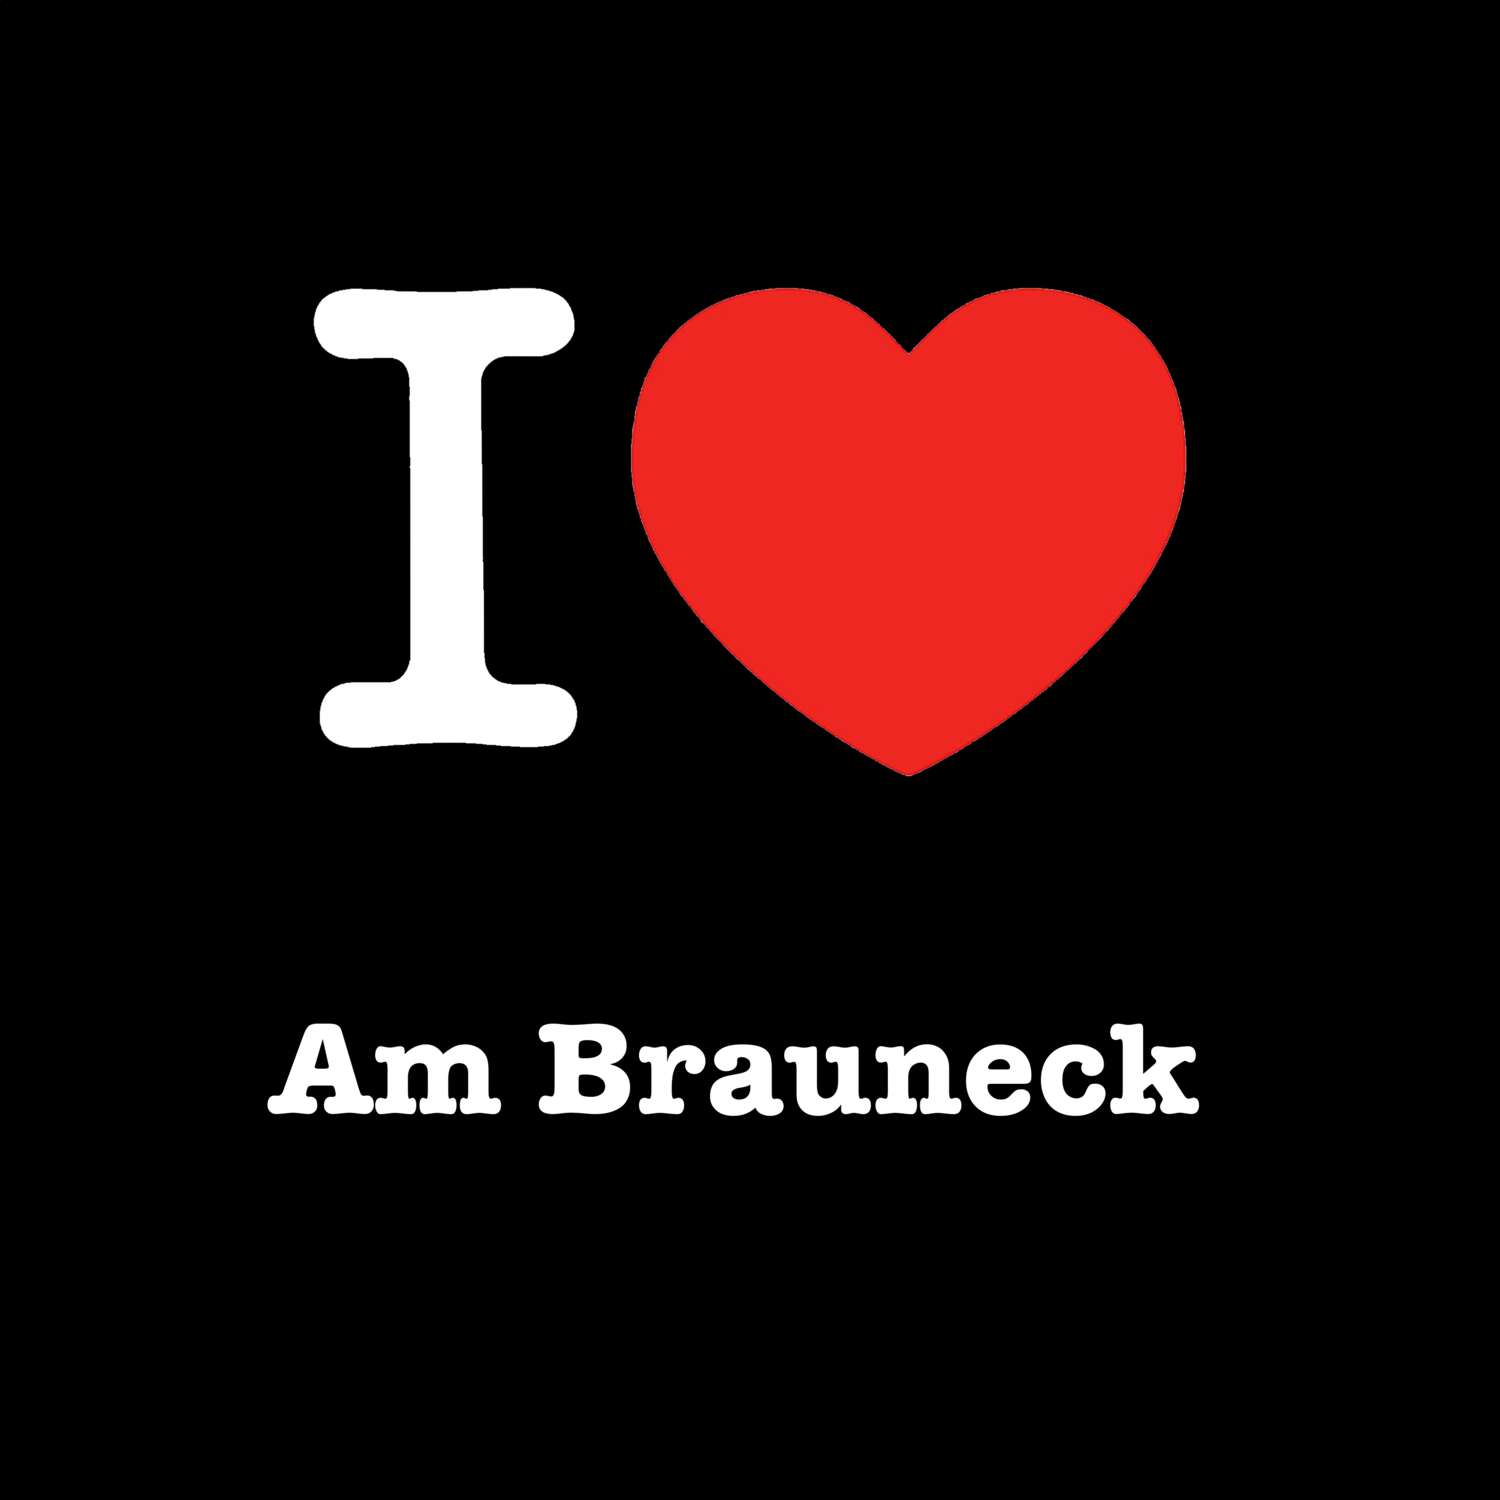 Am Brauneck T-Shirt »I love«